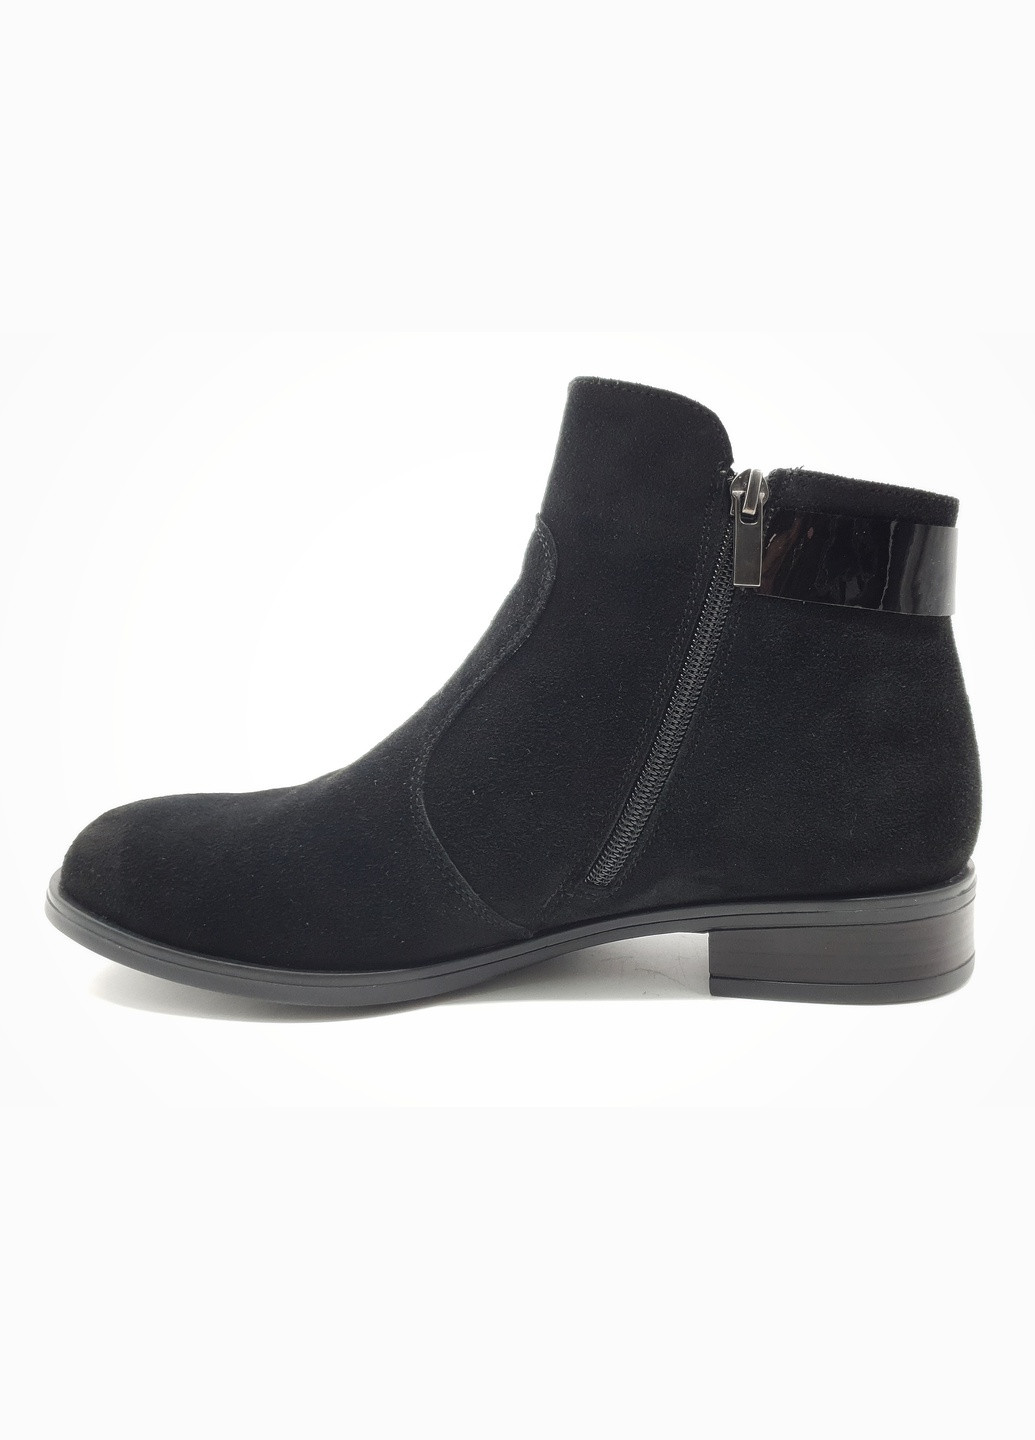 Осенние женские ботинки черные замшевые fs-17-20 24 см (р) Foot Step